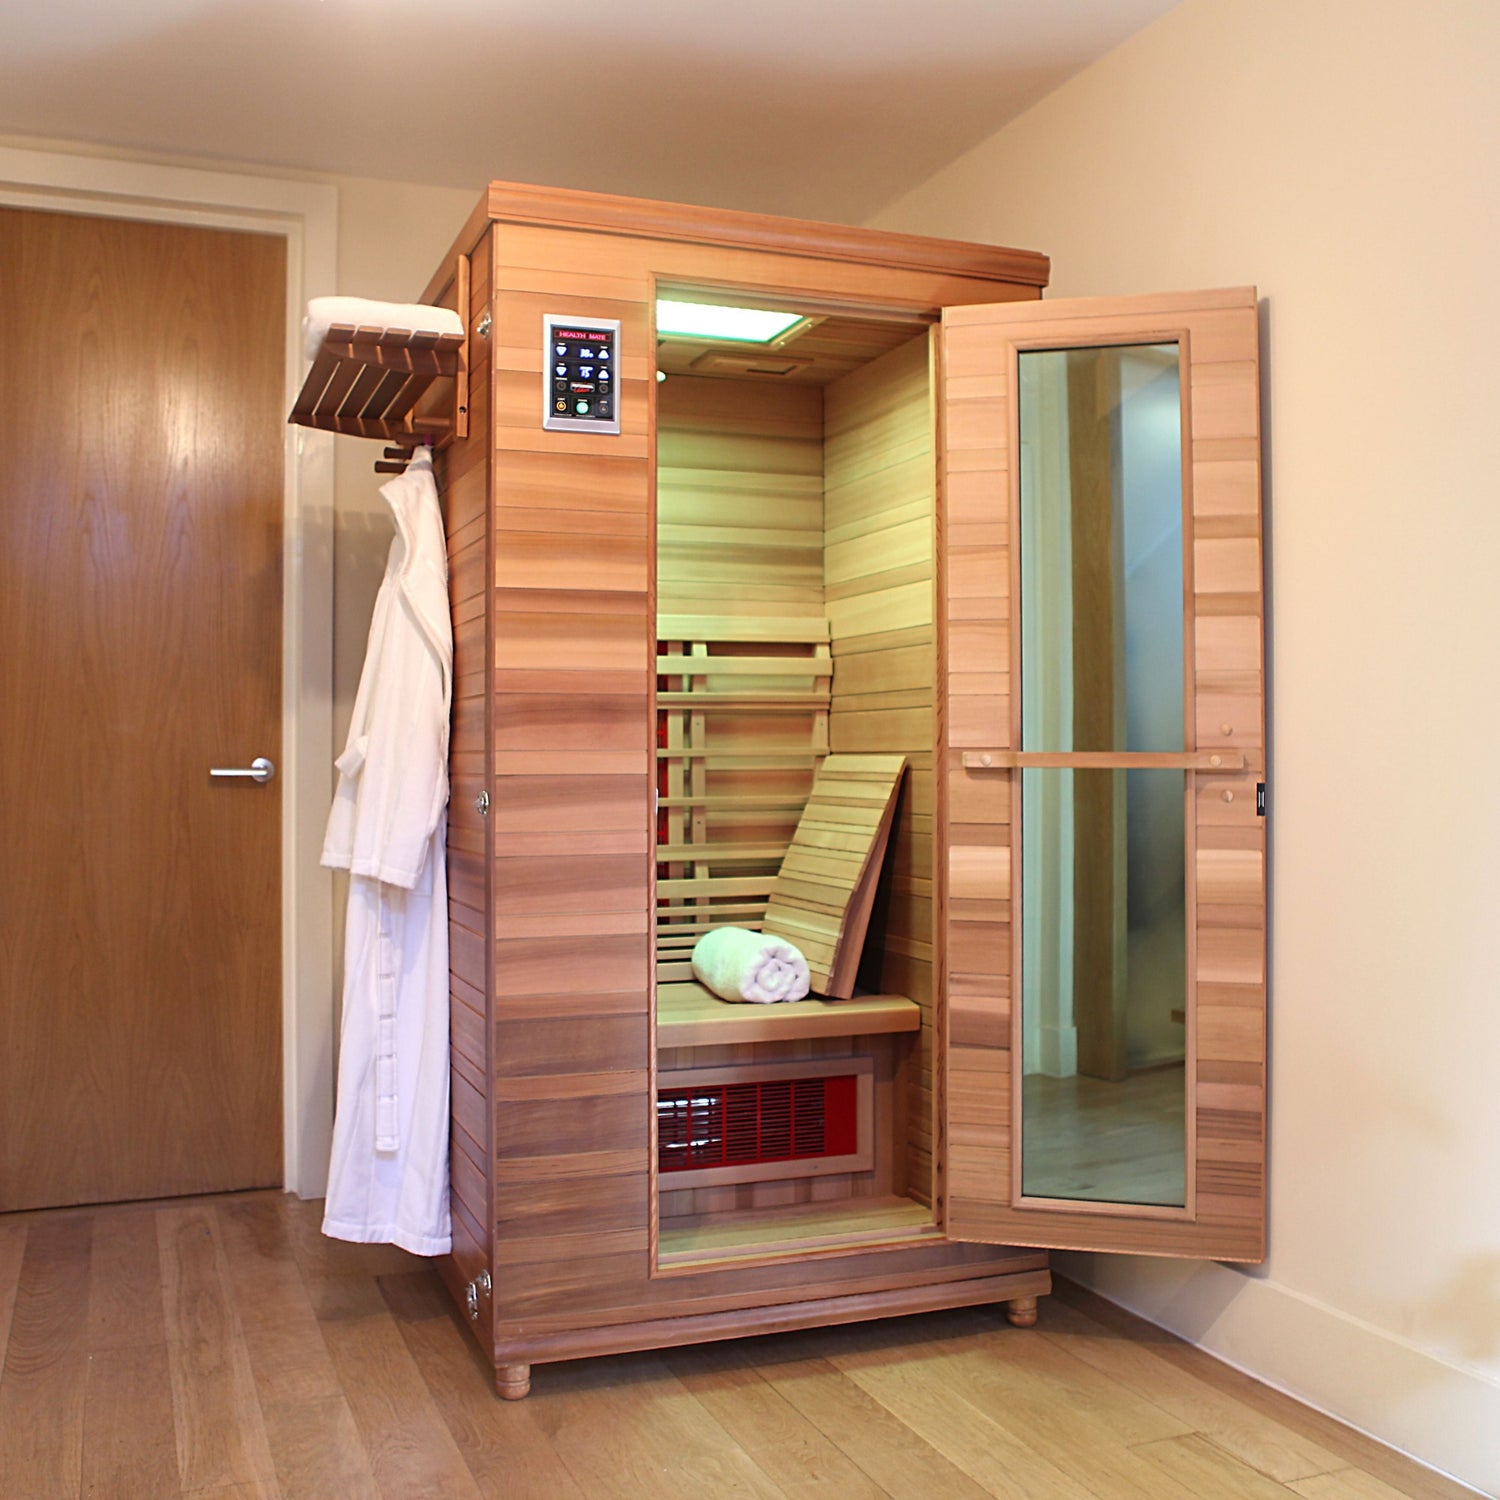 A health mate sauna in a clean room